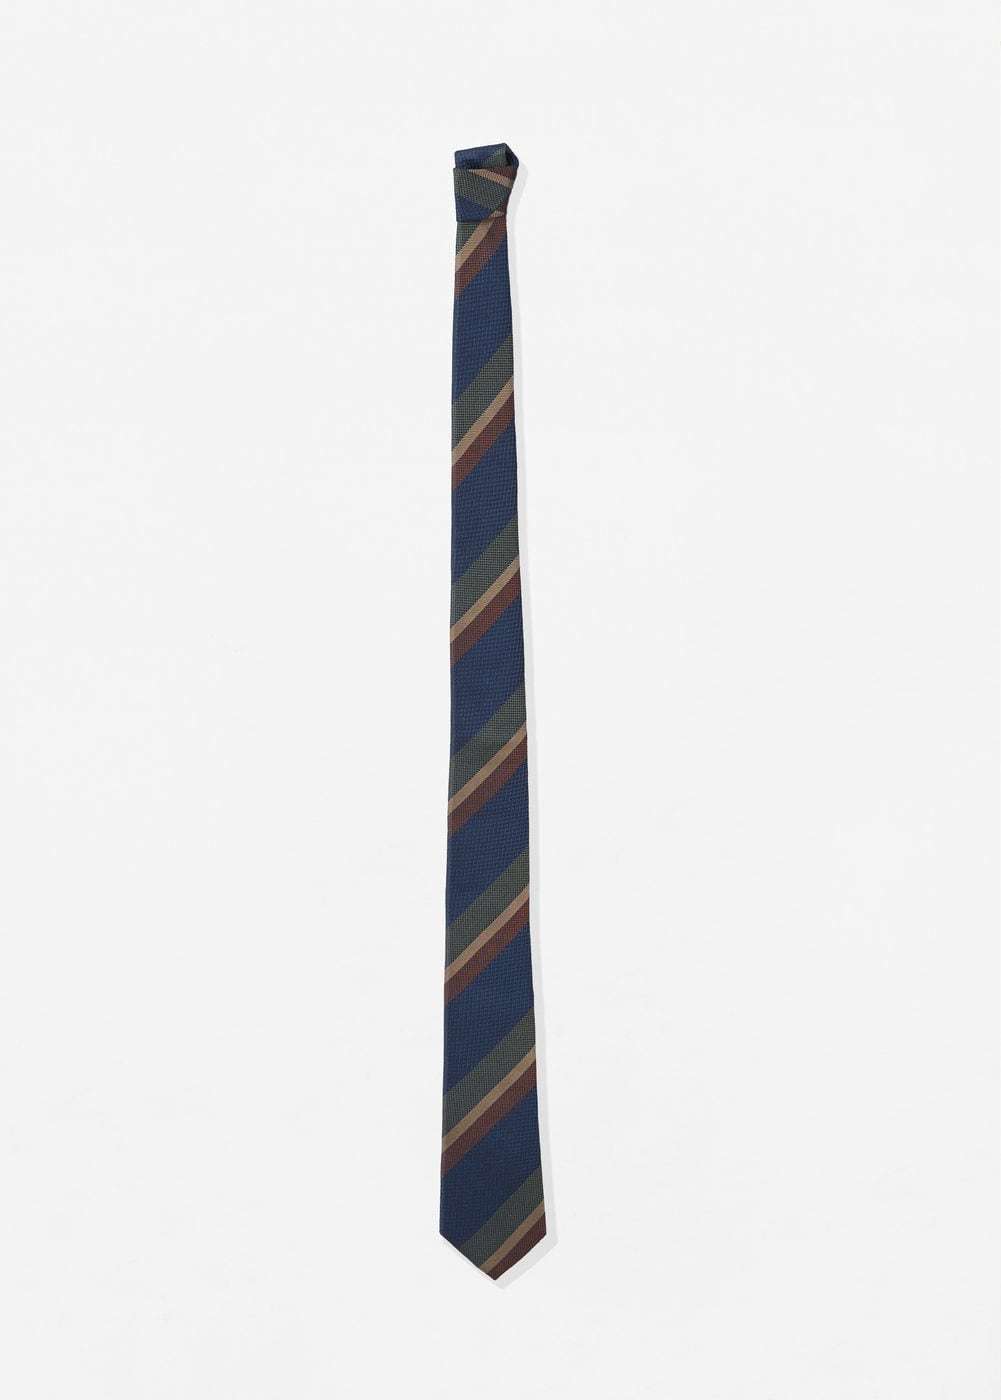 Mango csíkos selyem nyakkendő 2017.08.21 #217802 fotója